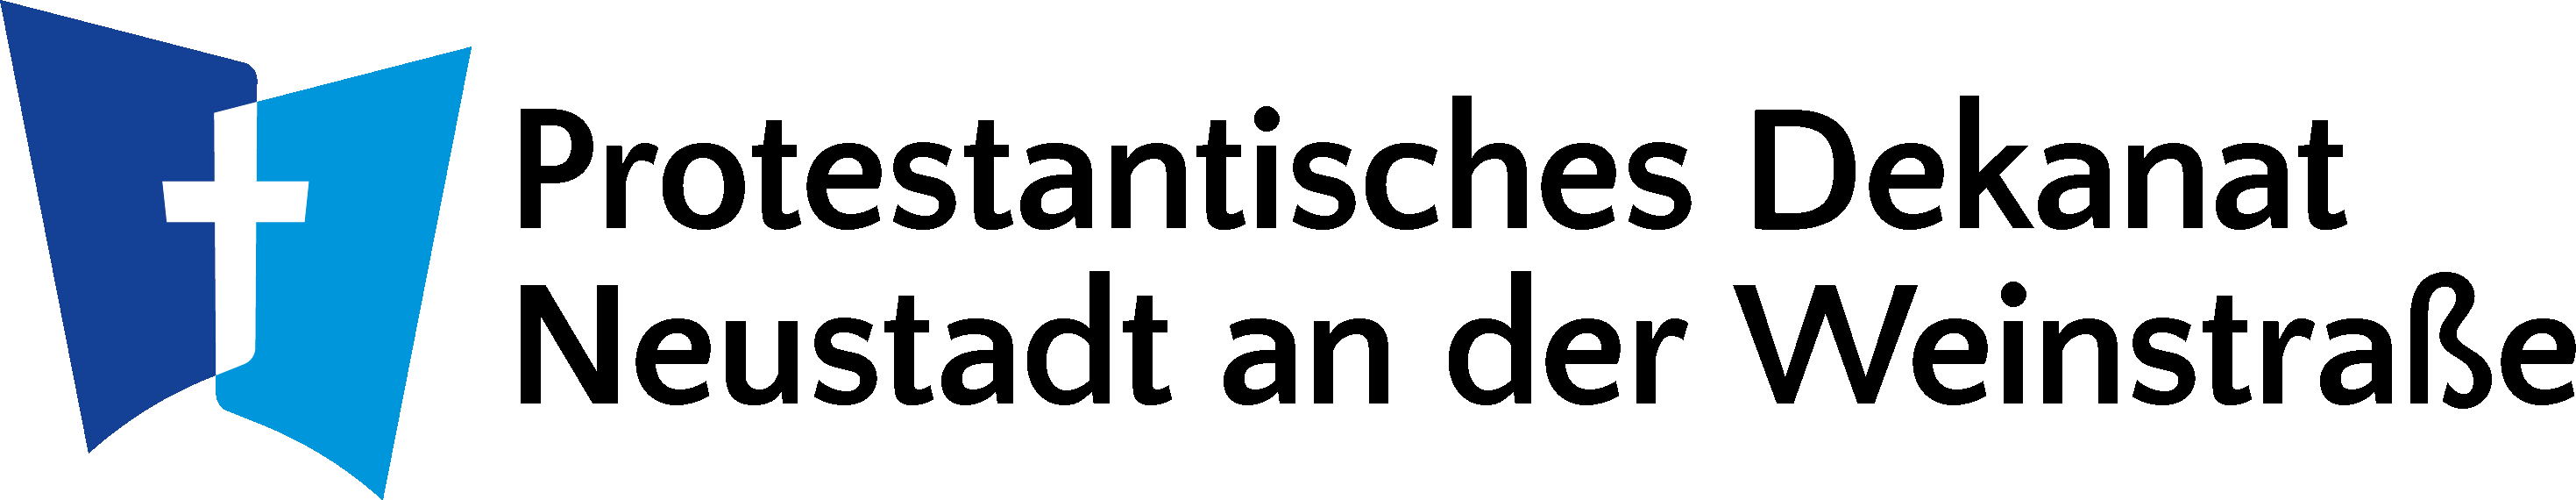 Logo Dekanat Neustadt